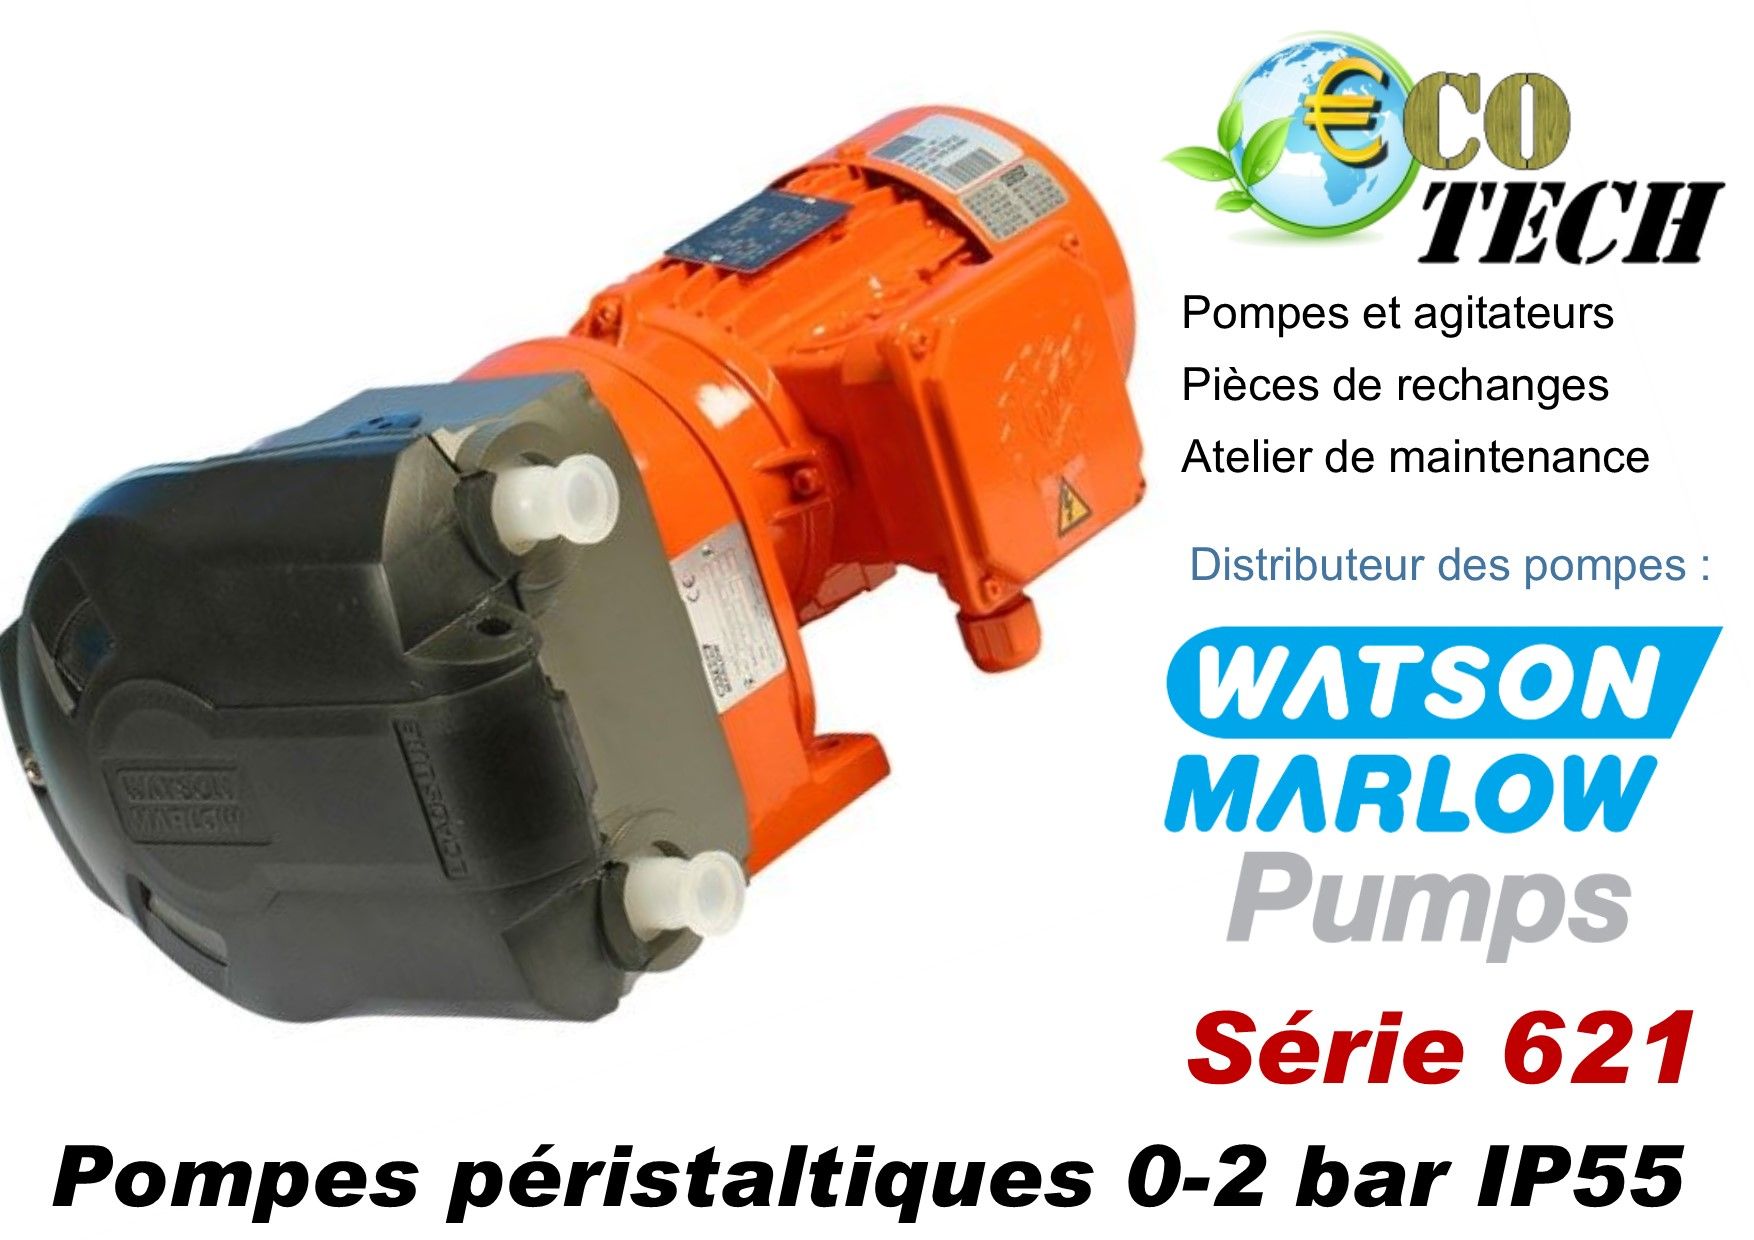 Pompe industrielle watson marlow série 621 distributeur normandie rouen caen_0